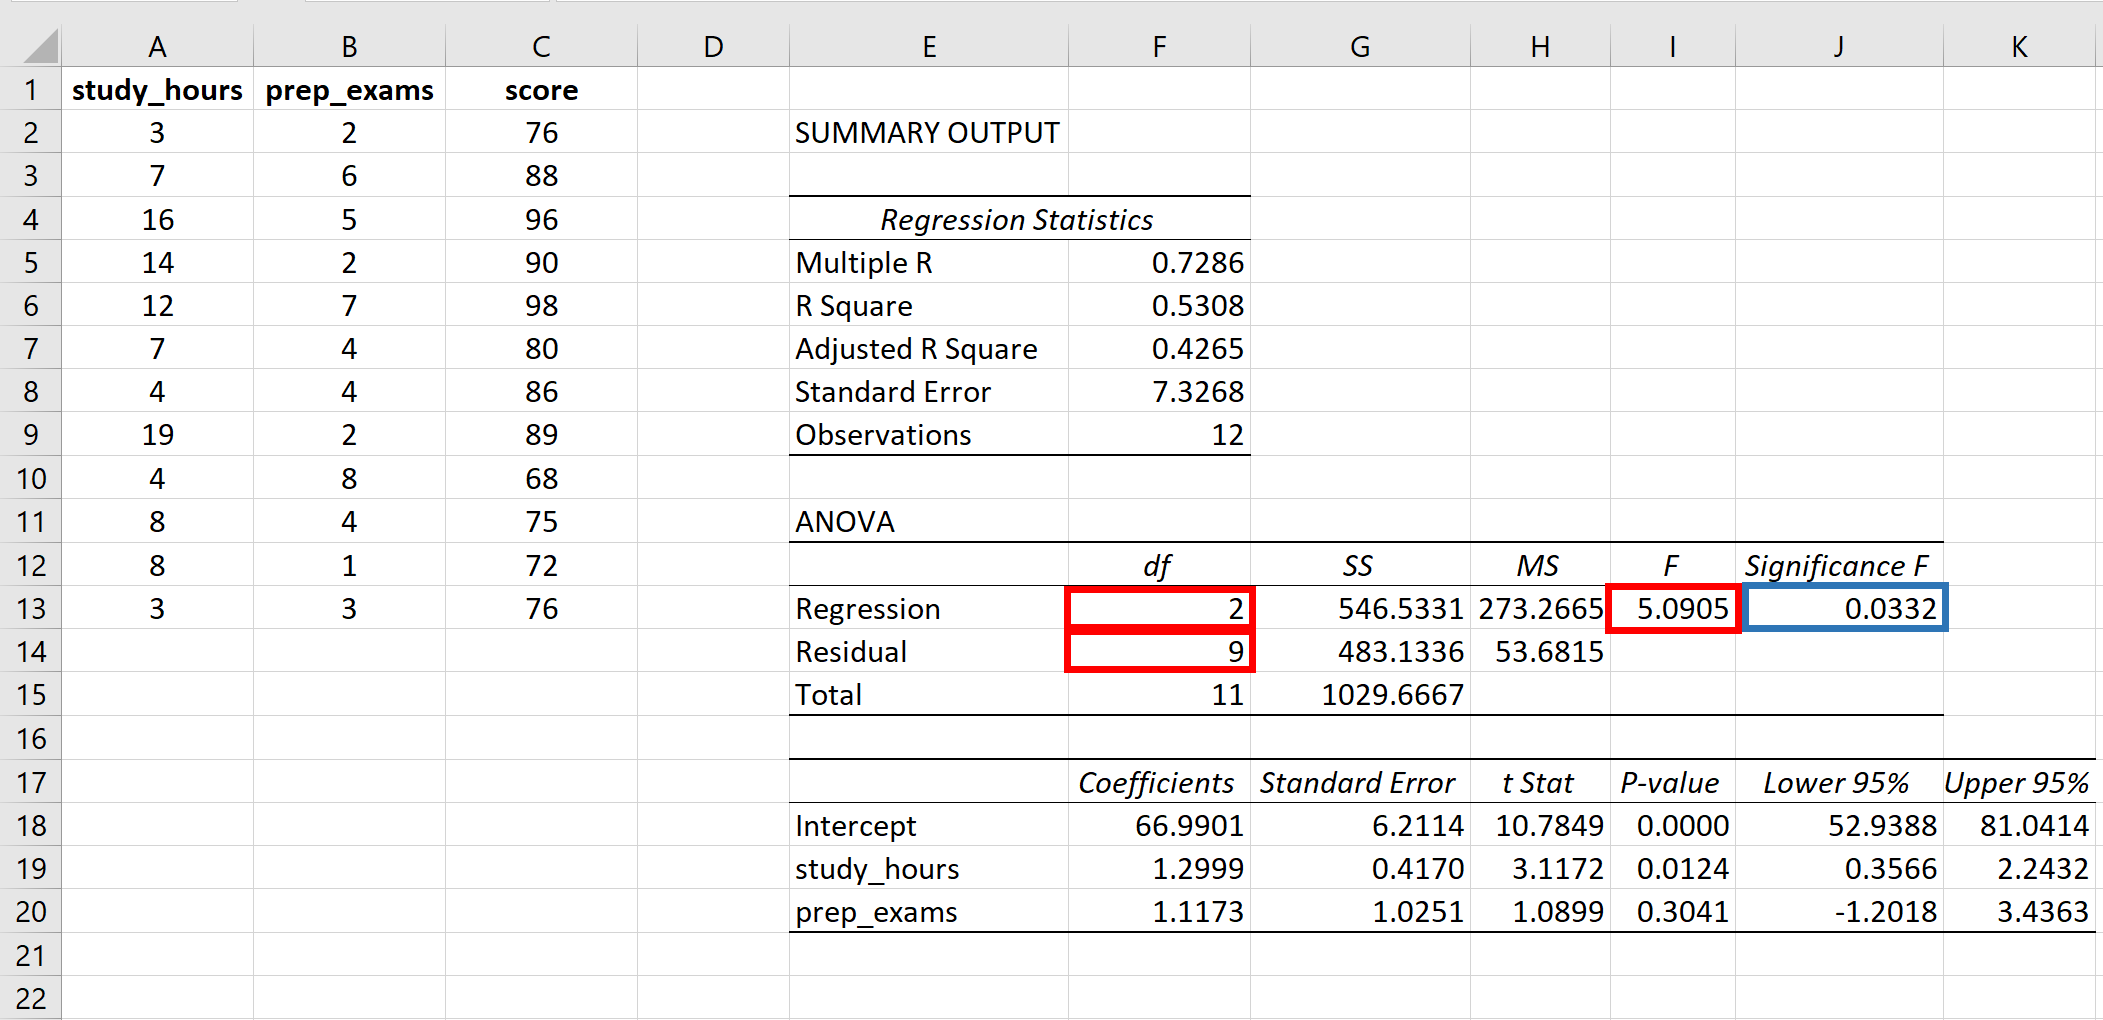 Valor P da estatística F no Excel